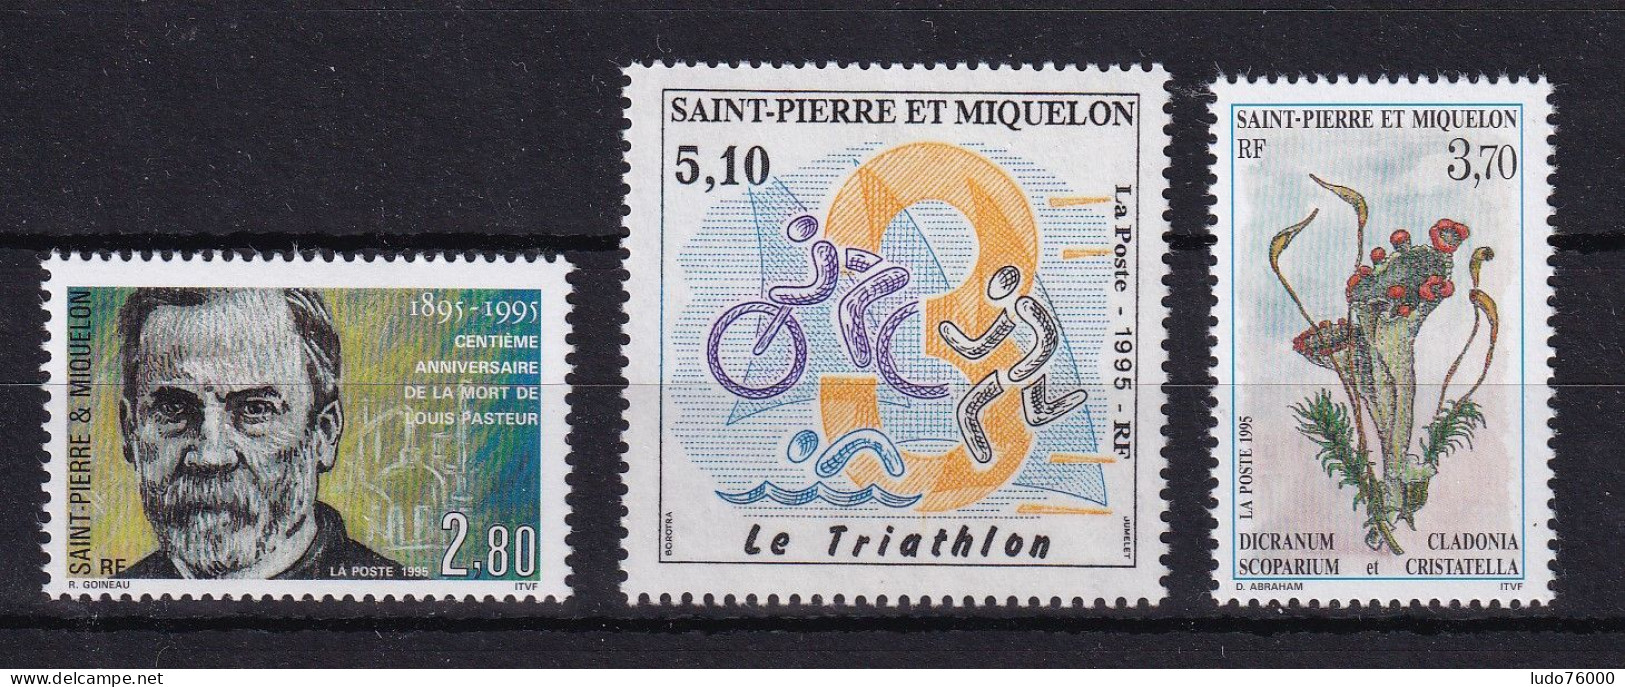 D 745 / ST PIERRE ET MIQUELON / N° 609/611 NEUF** COTE 5.60€ - Collections, Lots & Series